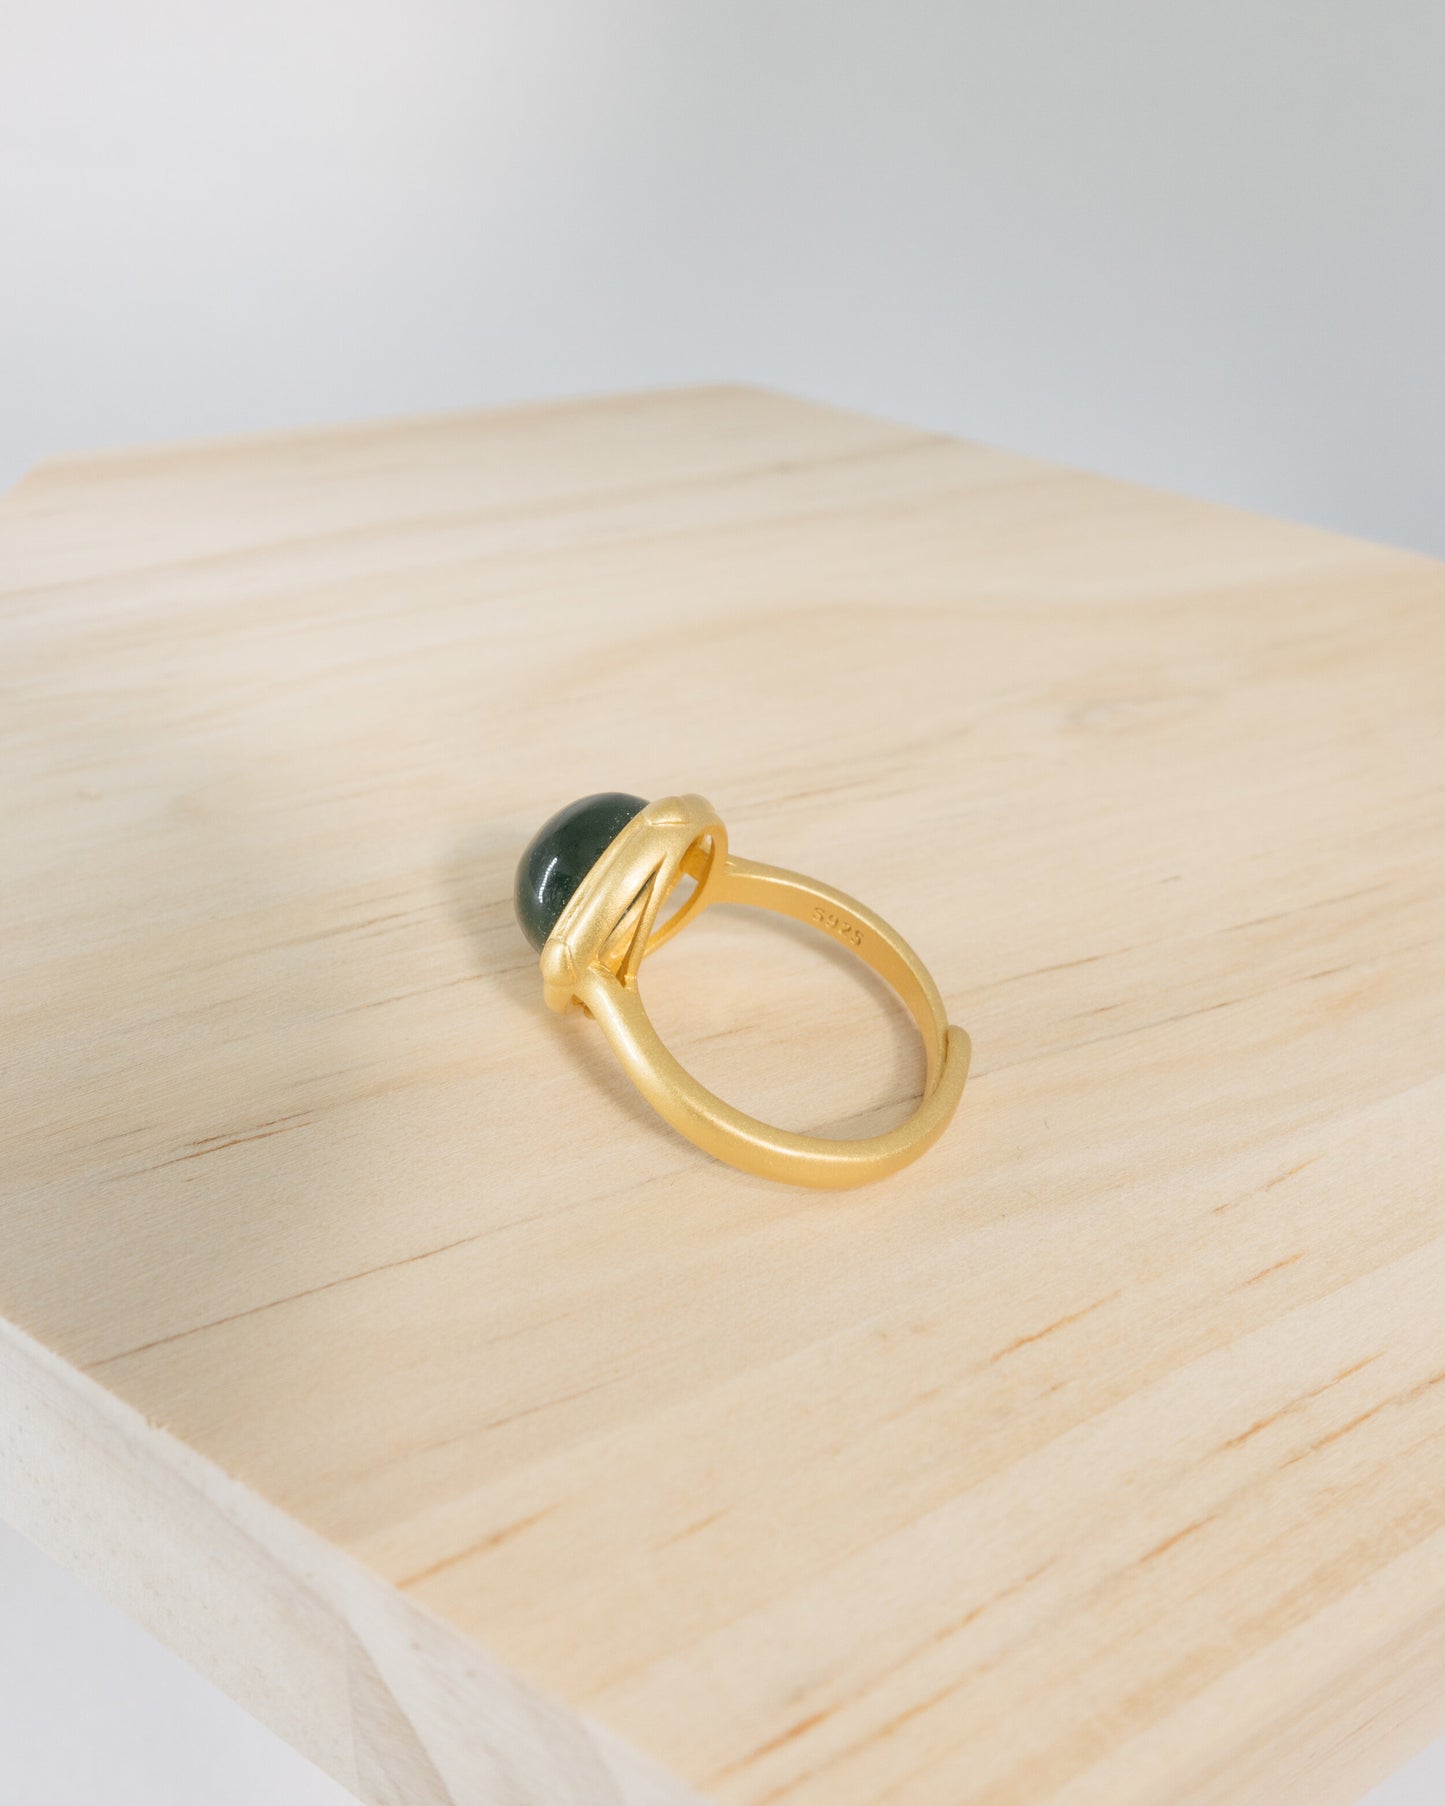 "Monet" green jade ring